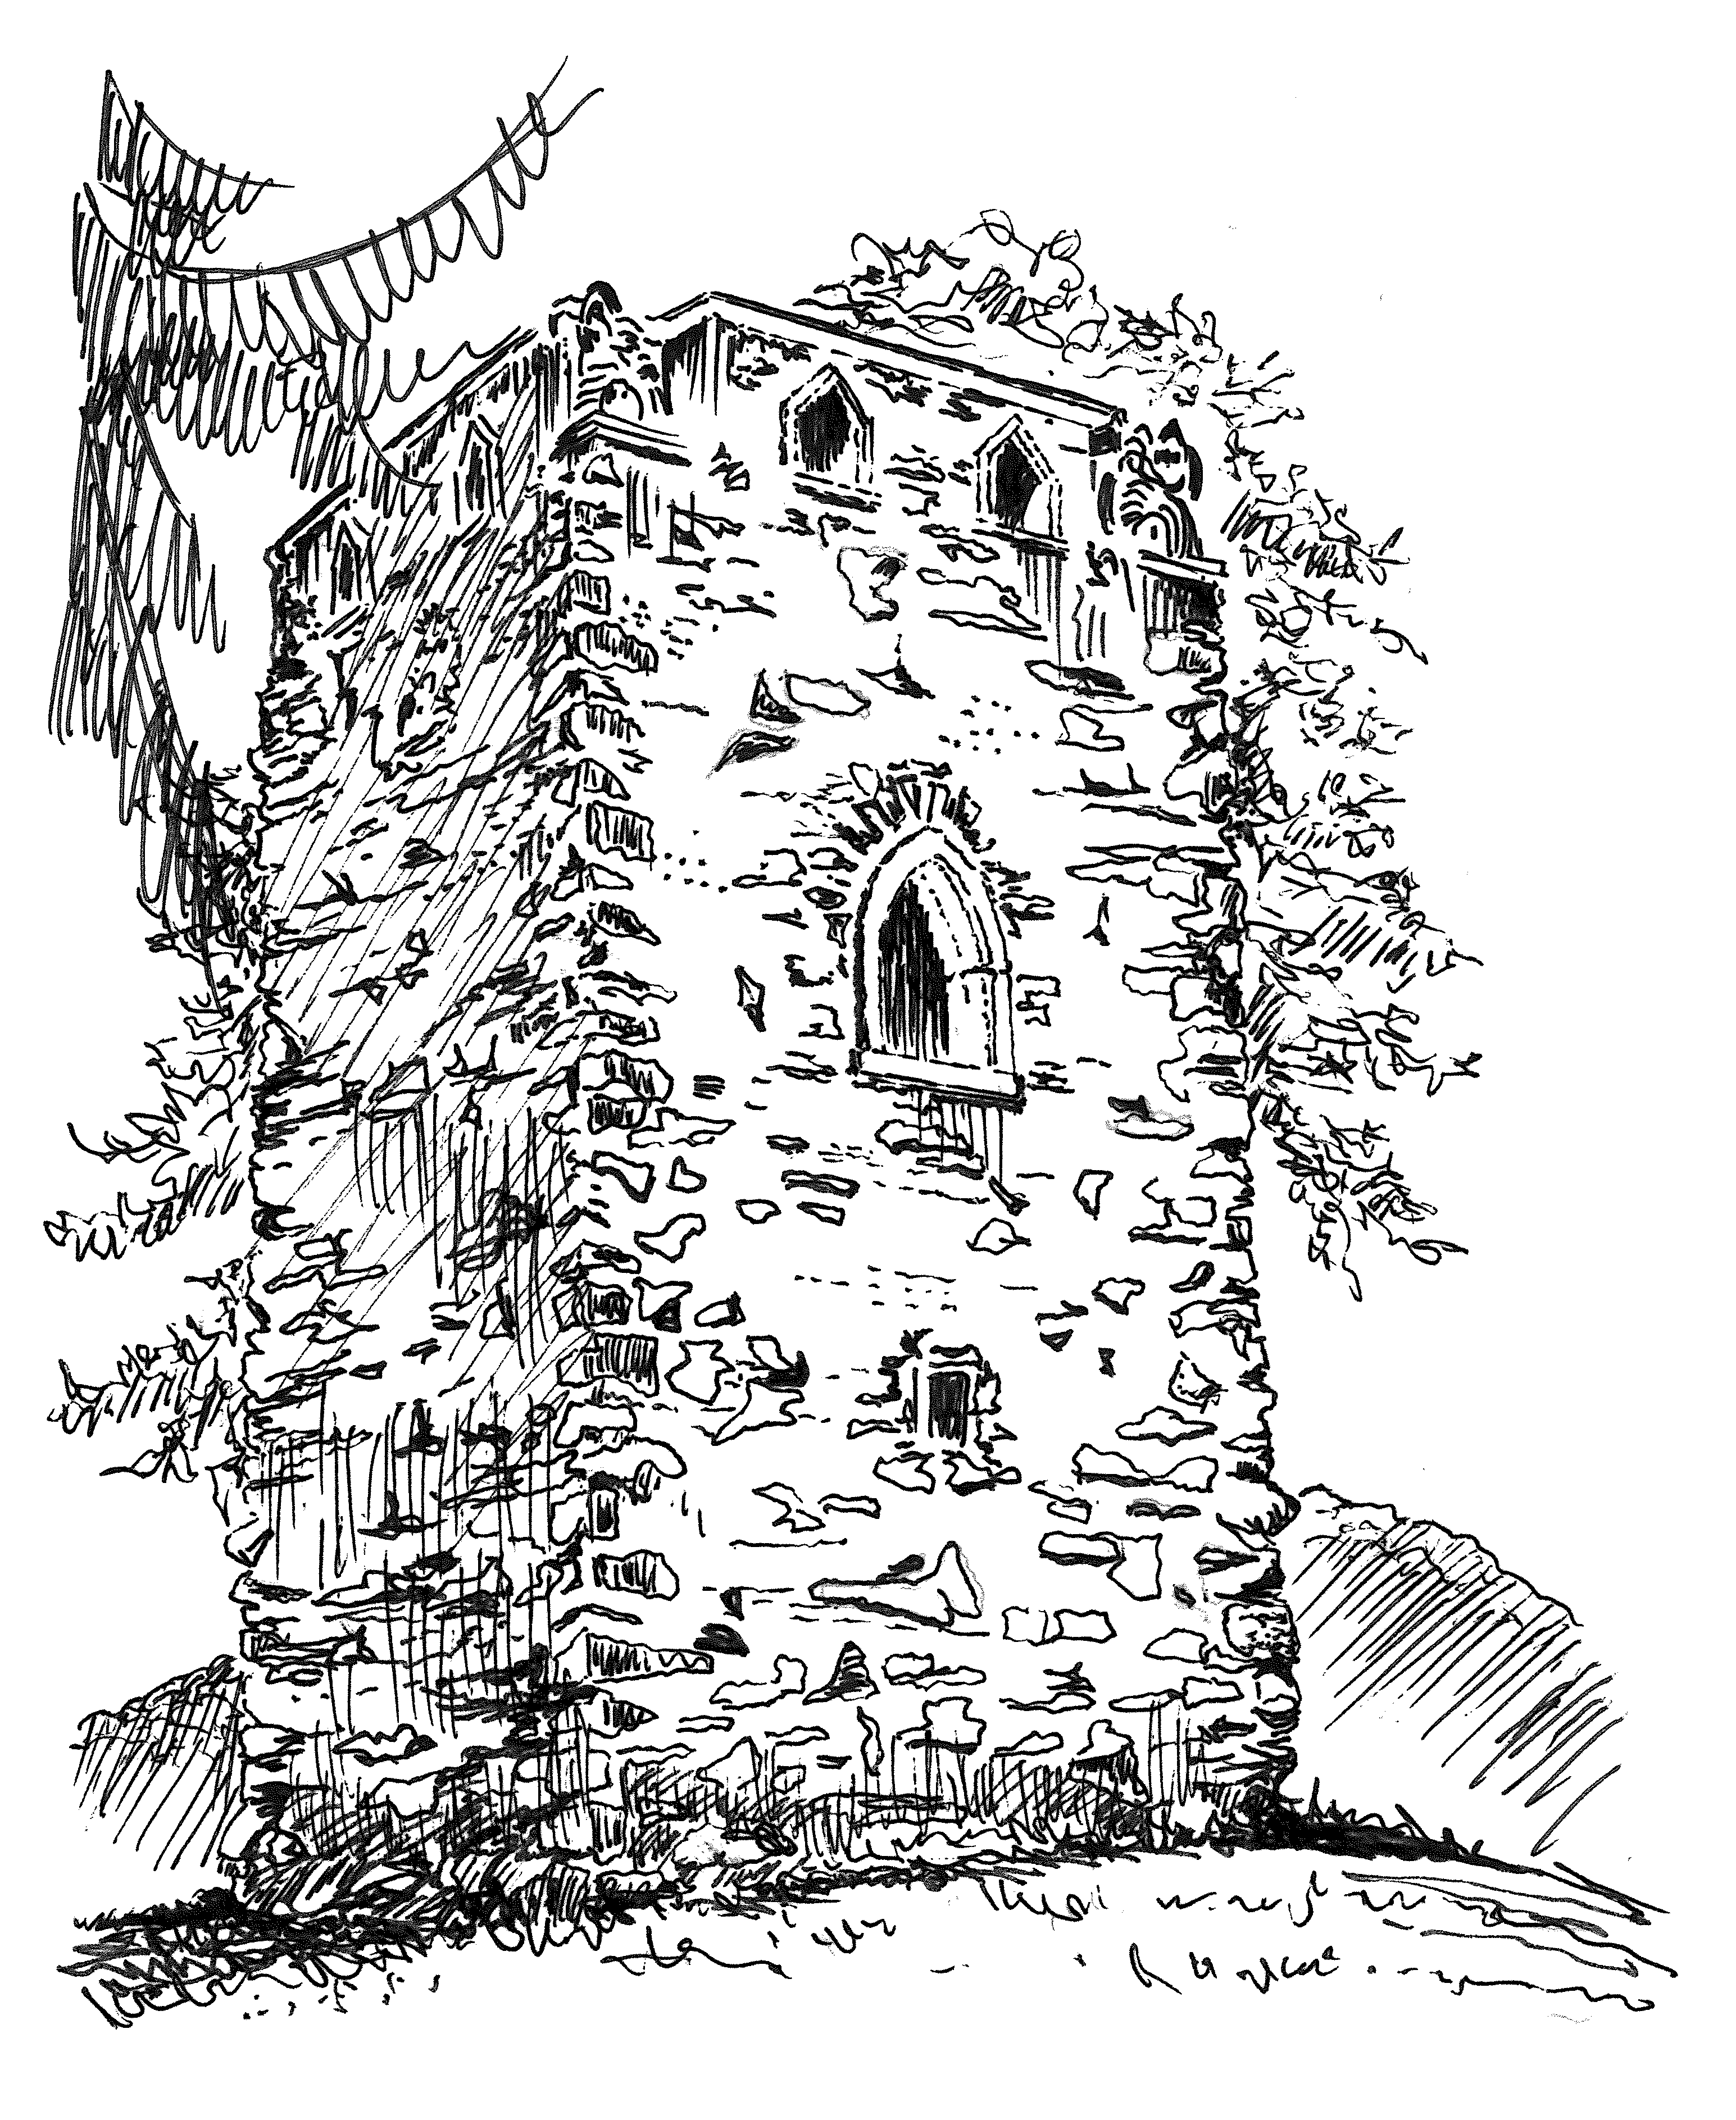 Schwarz-weiß Zeichnung vom Waldnerturm (Vierritterturm)